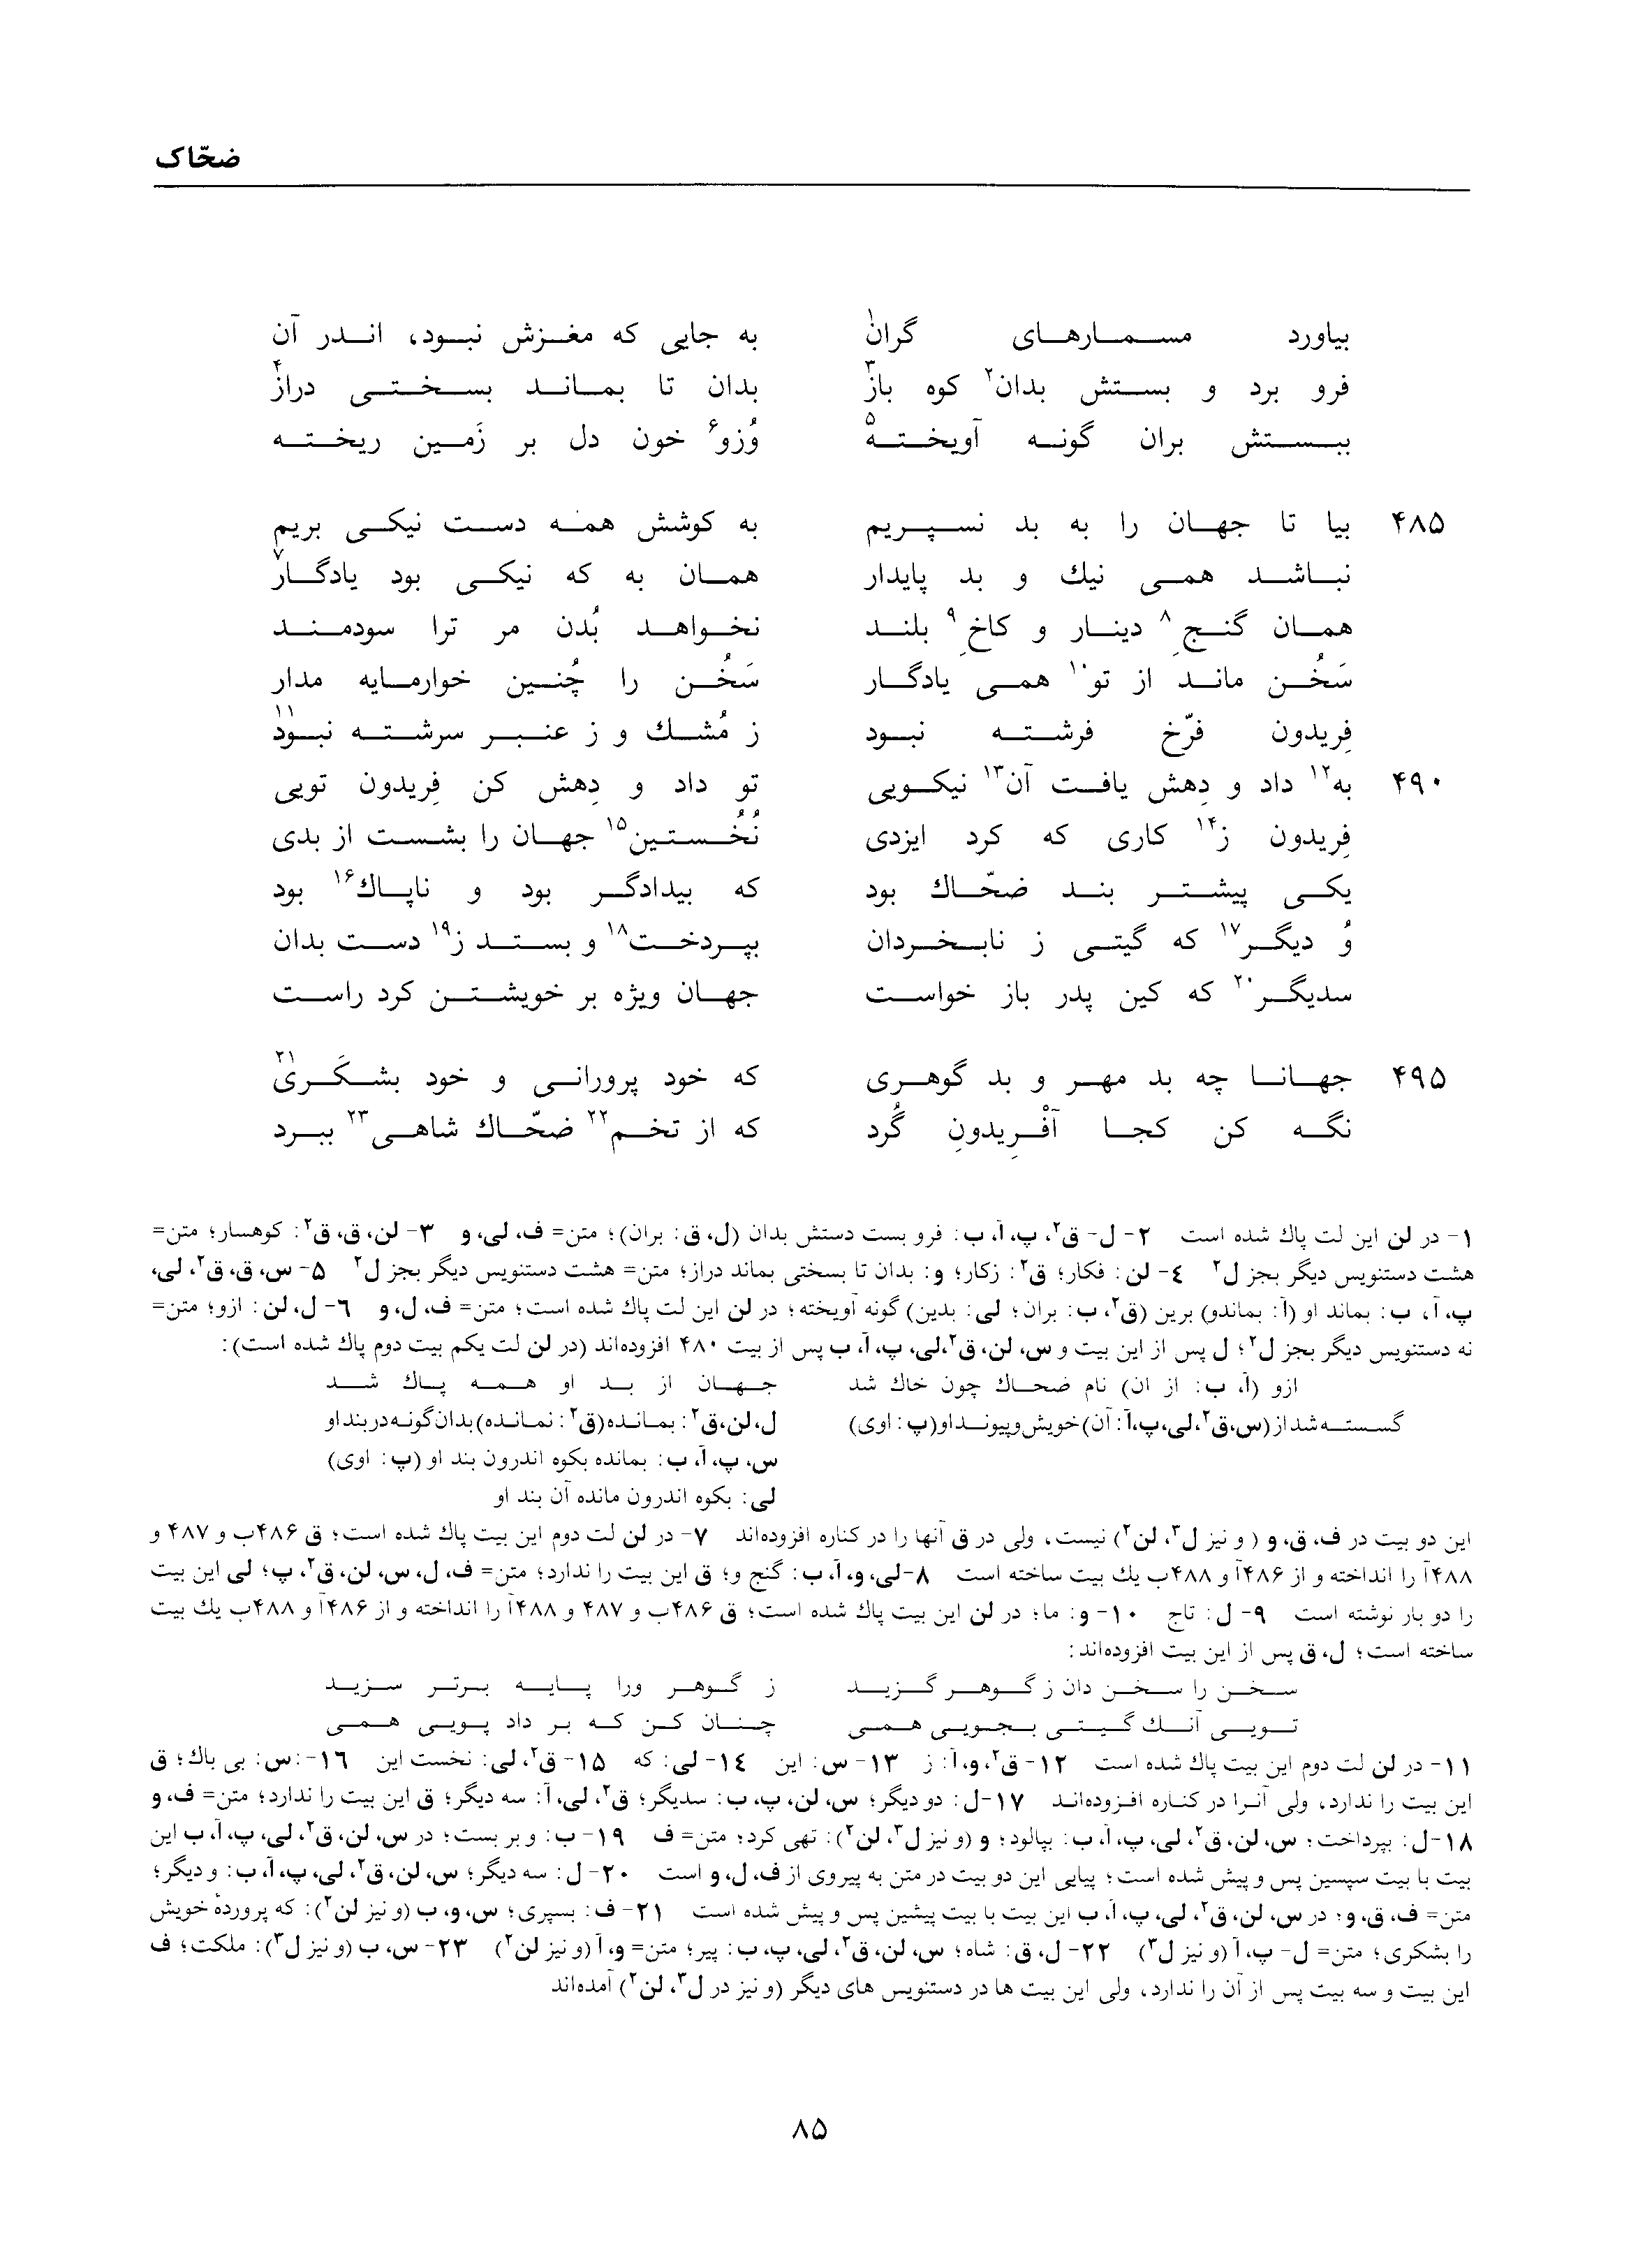 vol. 1, p. 85